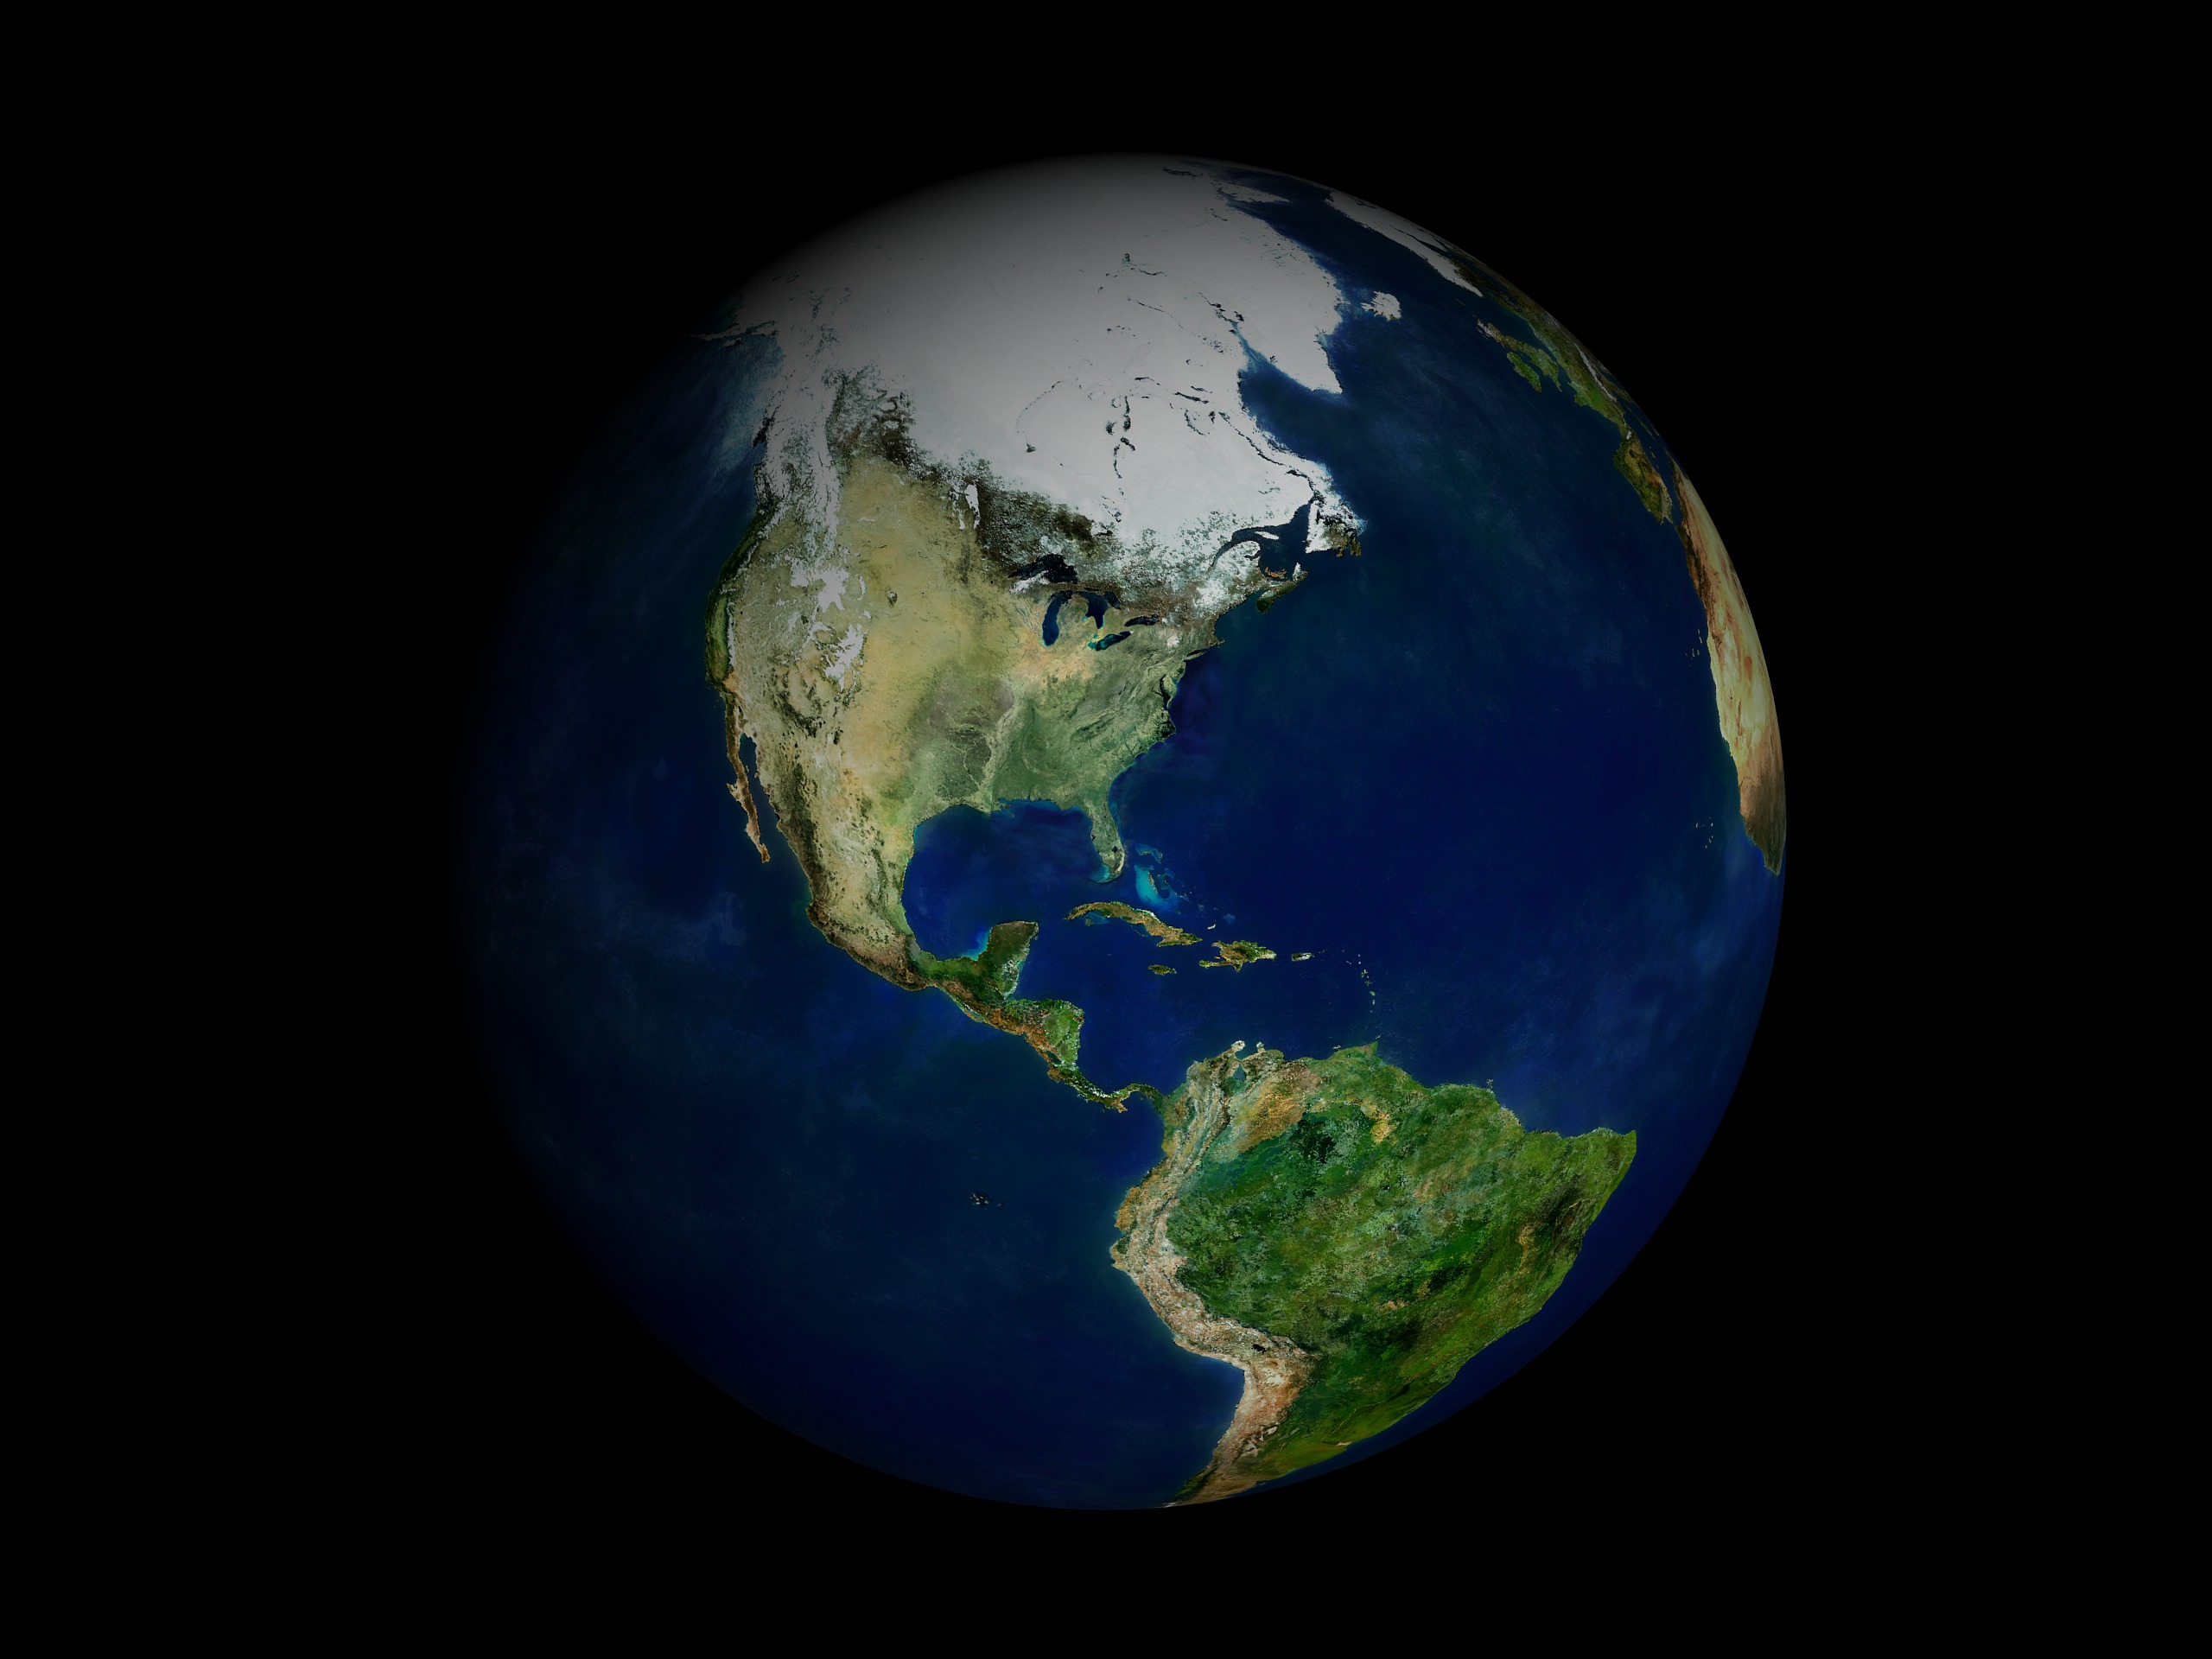 Снимки планеты земля из космоса настоящие